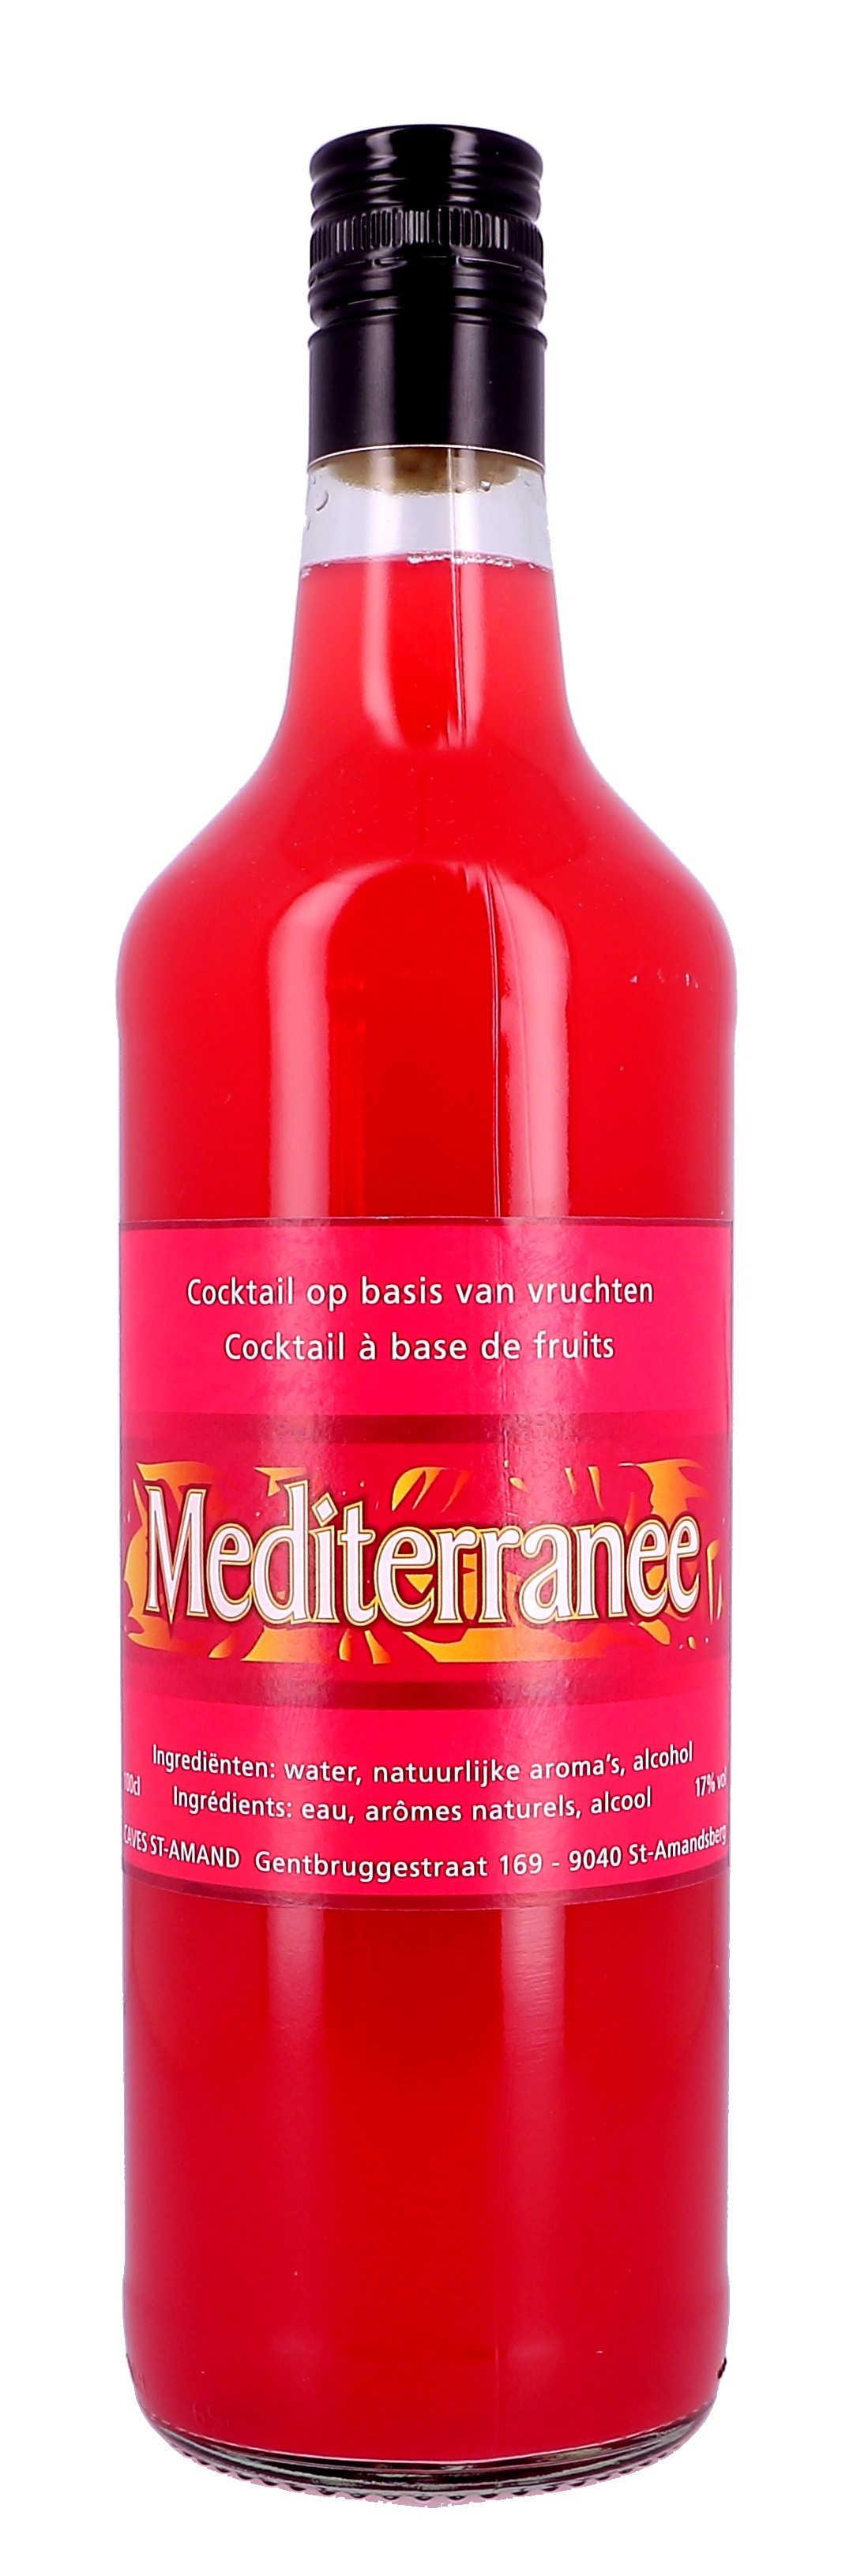 Aperitif-Cocktail Méditeranée 1L 17% (Bereide Aperitieven)